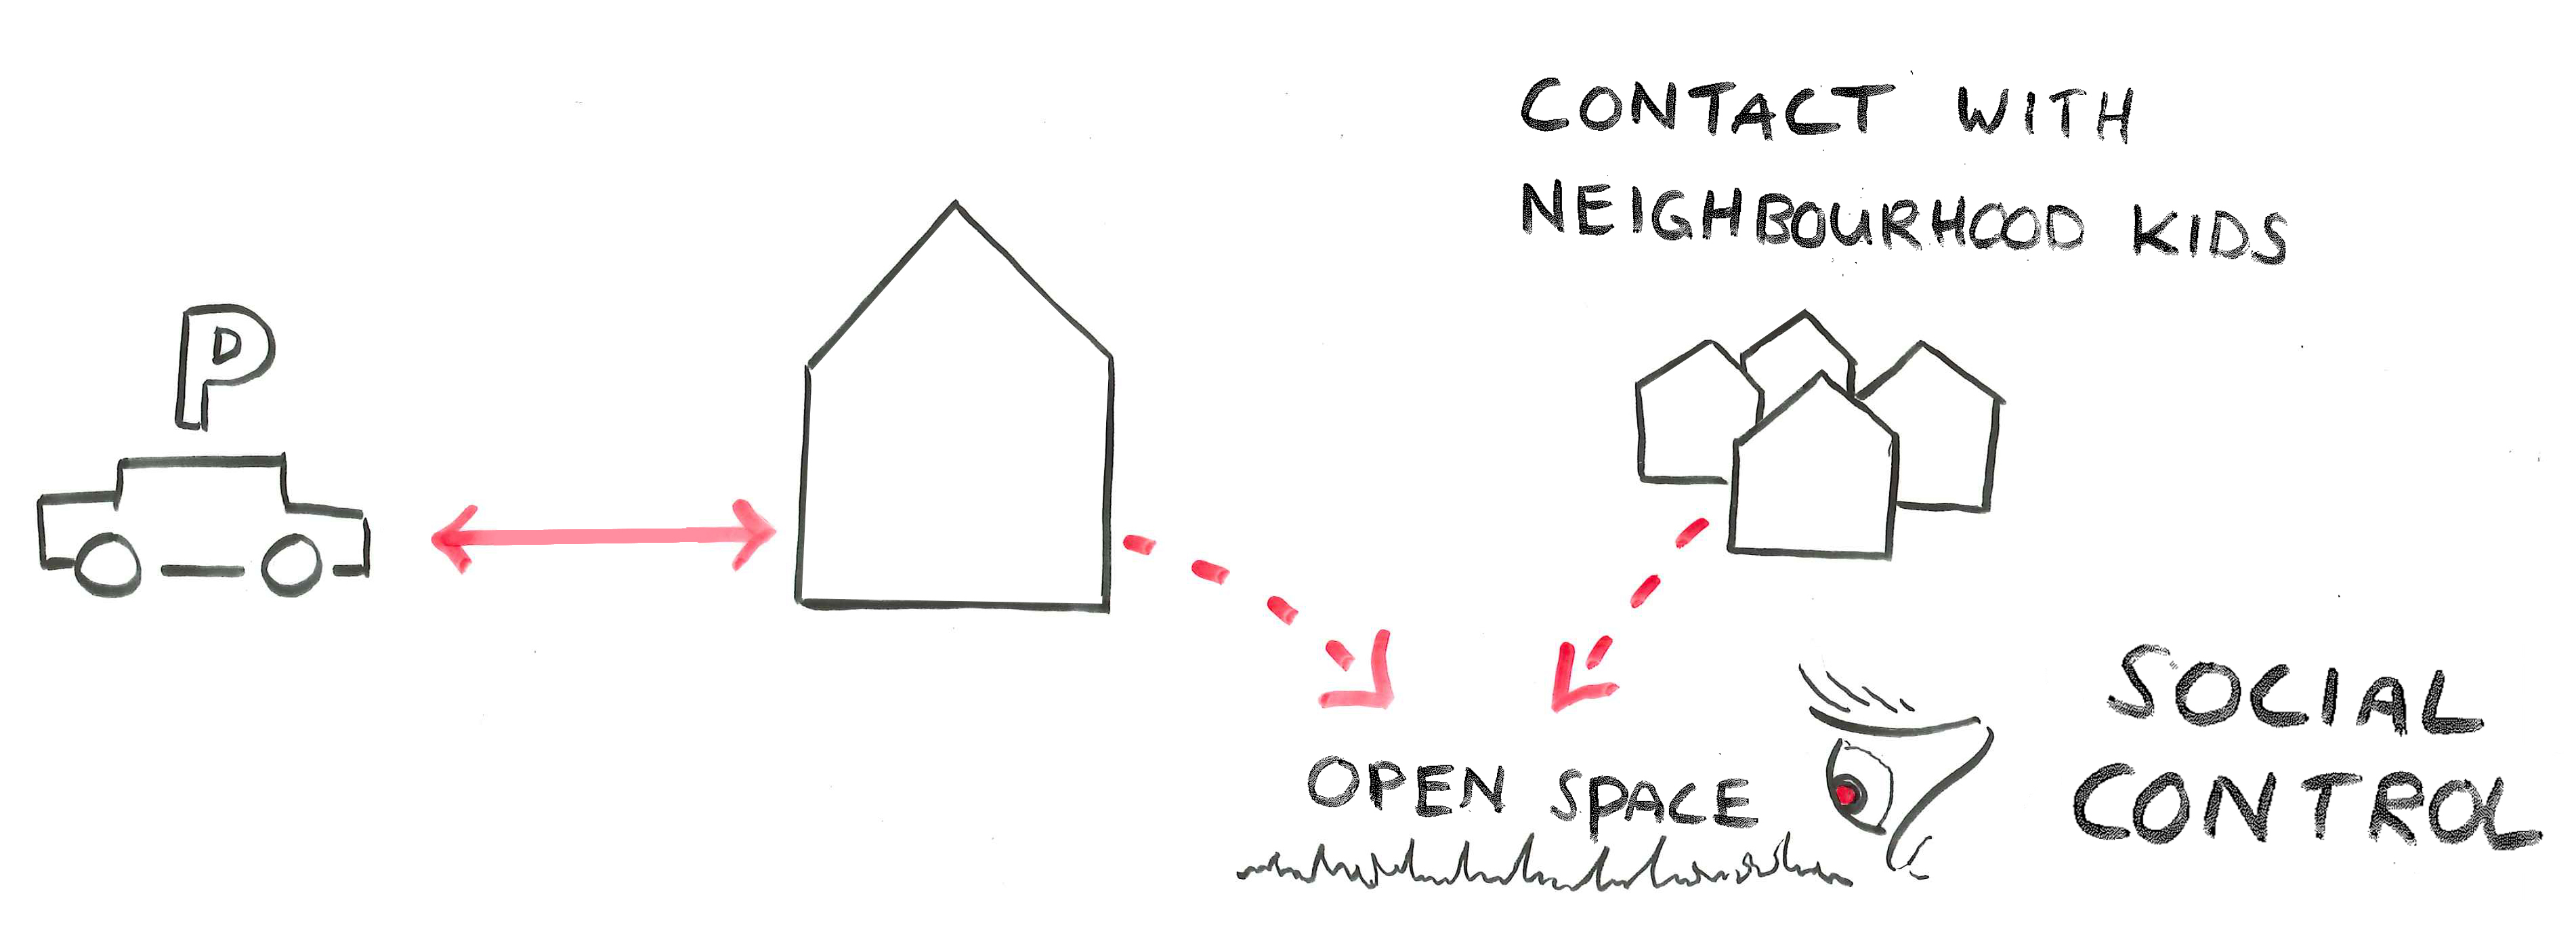 Contact With Neighbourhood